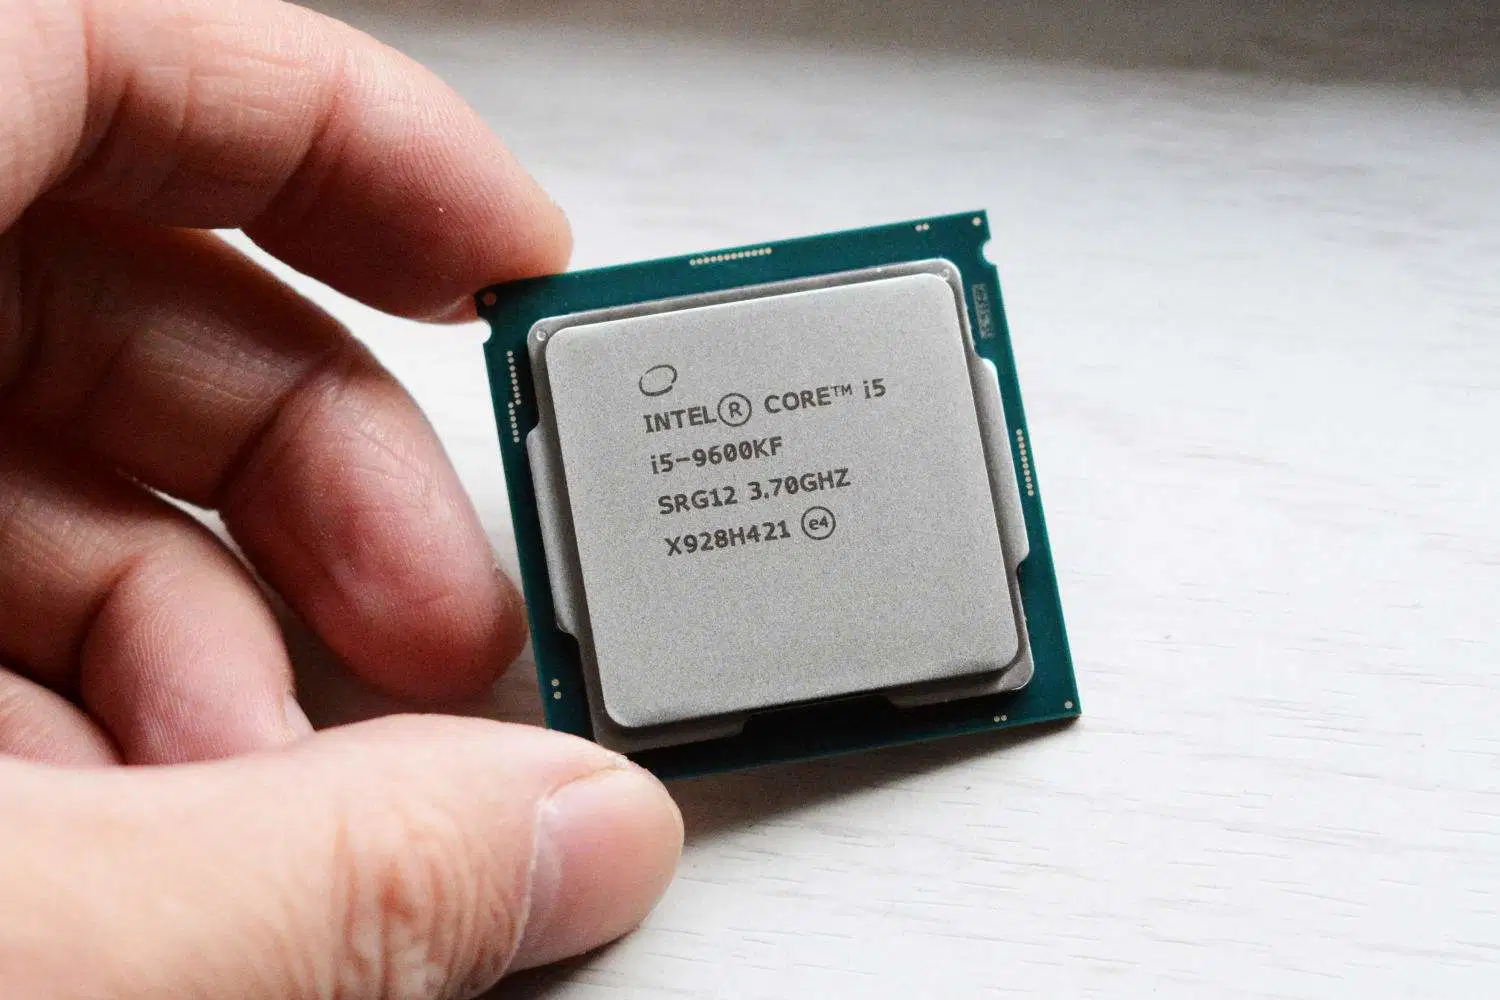 Процессор Intel Core i5-9600kf 6 ядер процессоров для настольных ПК до 4,6 Ггц Turbo разблокирован, свободной от процессора в корпусе LGA11151 графической системы в разобранном виде